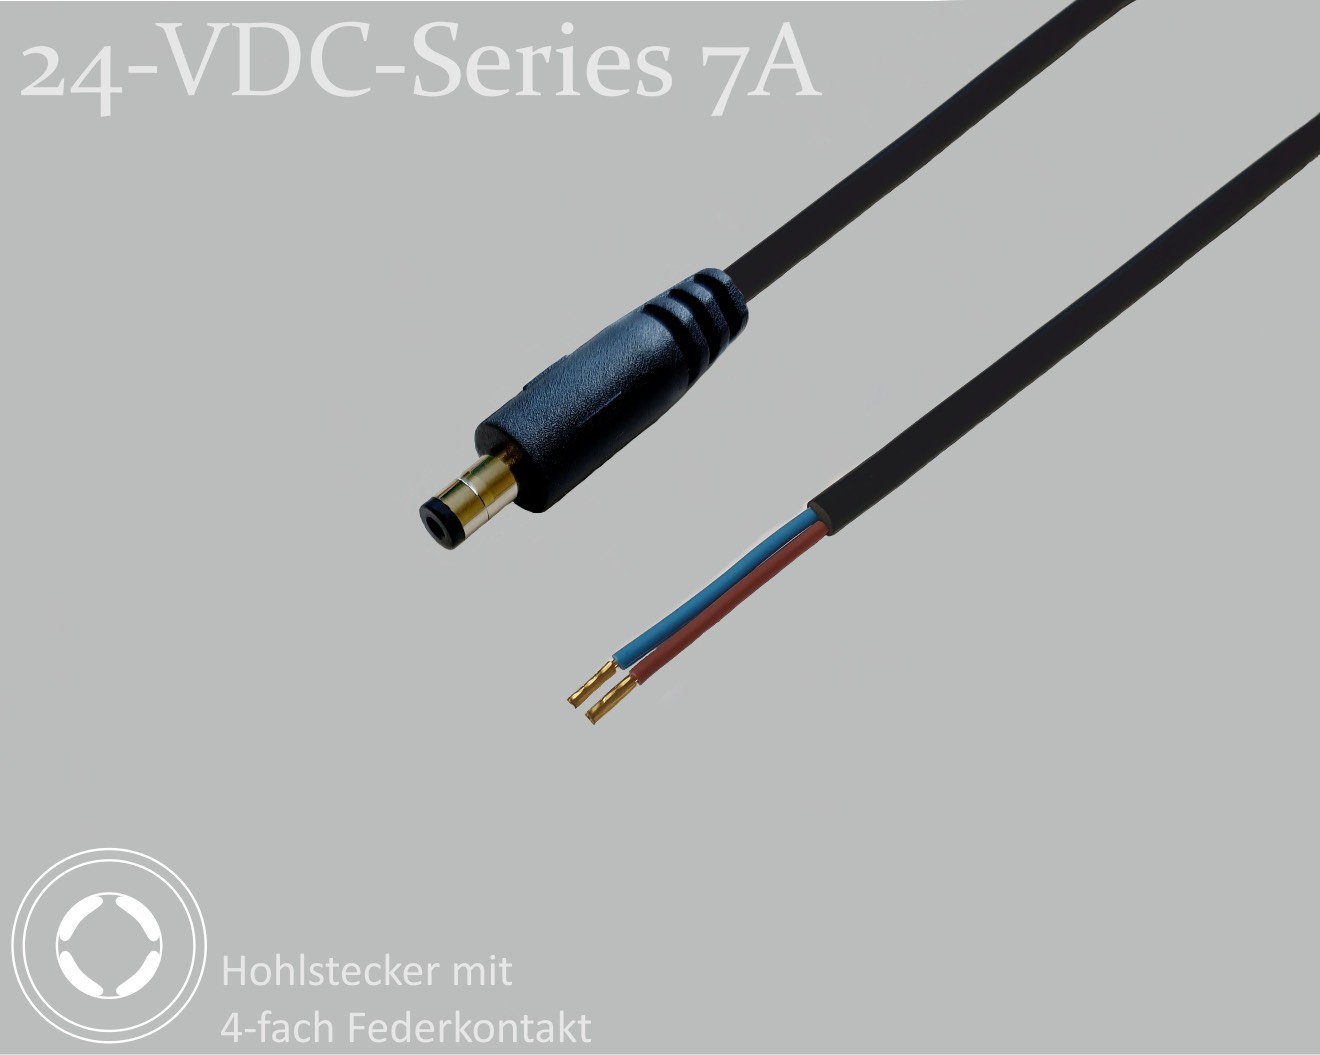 24-VDC-Series 7A, DC-Anschlusskabel, DC-Stecker mit 4-Federkontakt 2,1x5,5x9,5mm, Rundkabel 2x0,50mm², schwarz, Aderendhülsen, 1,5m